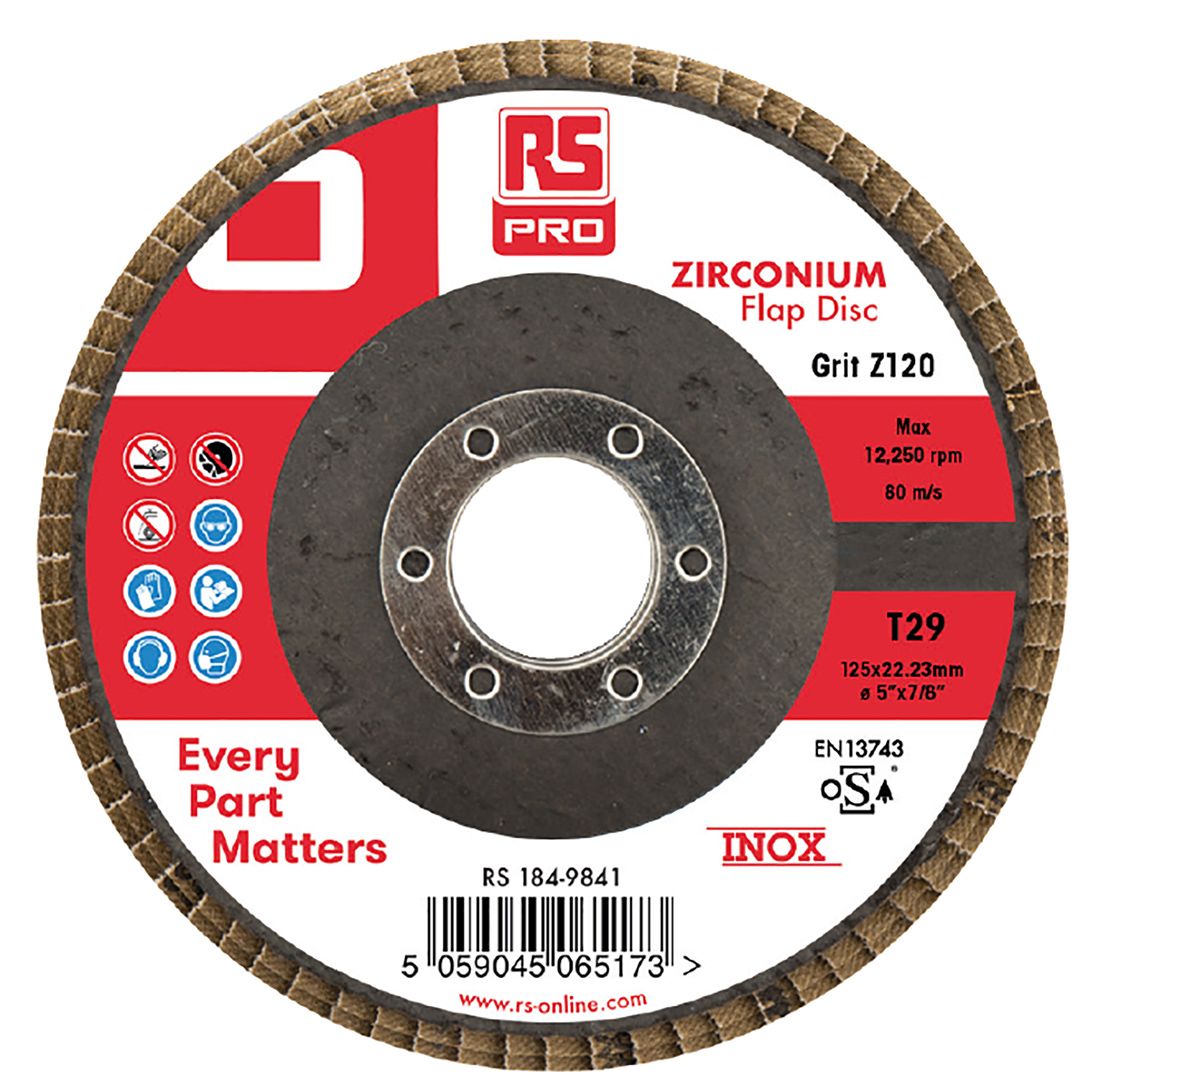 RS PRO Zirconium Dioxide Flap Disc, 125mm, P120 Grit